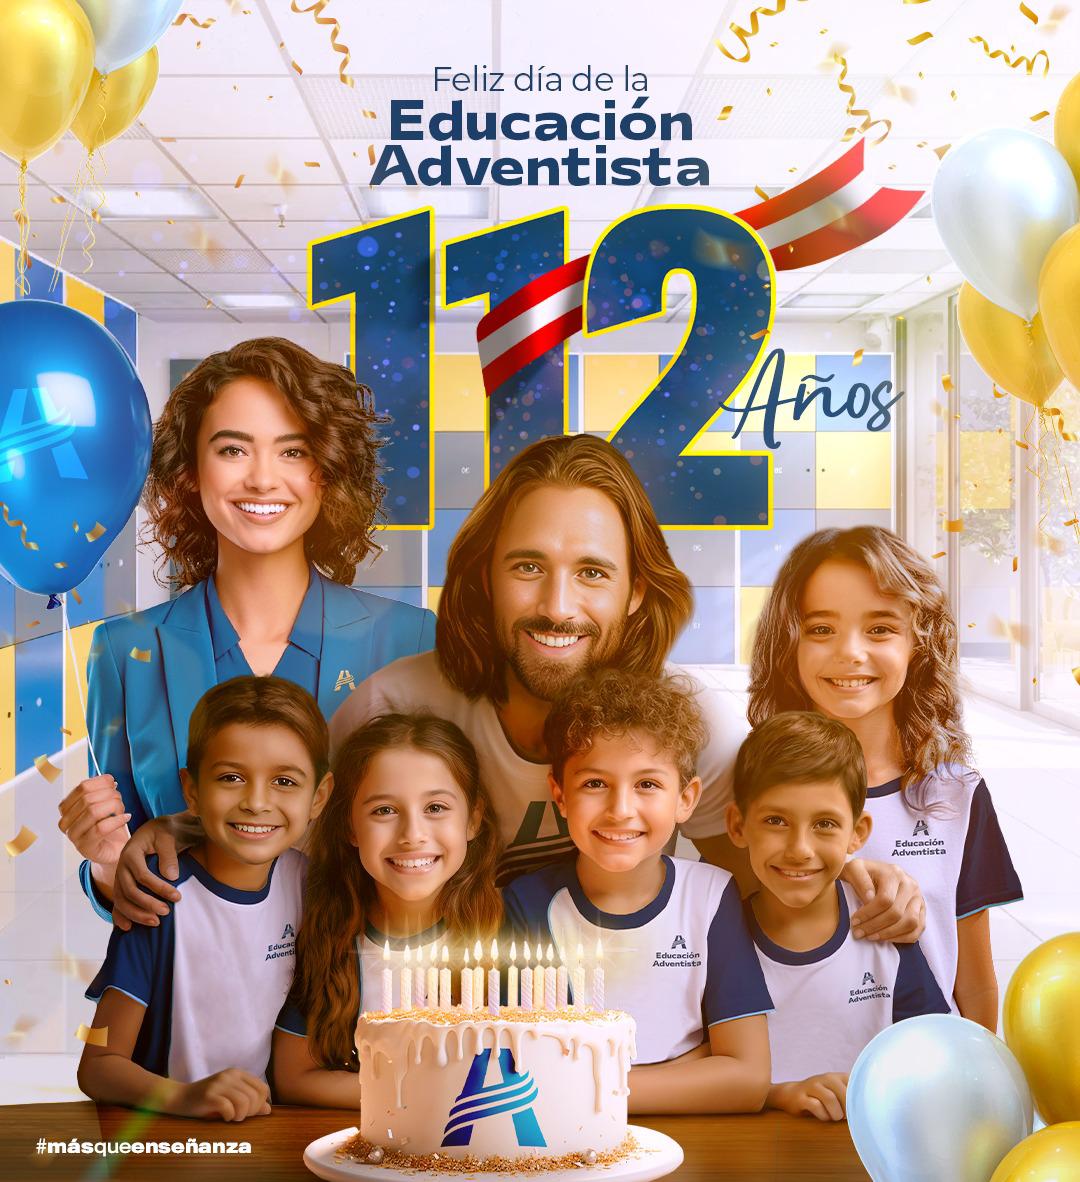 🎉¡112 años de transformación y aprendizaje! 🎂💙 🔰 Hoy celebramos el día de la Educación Adventista en el Perú 🇵🇪. Únete a nosotros y agradece a Dios por todas sus bendiciones. 🥰✨  🫶🏻 ¡Feliz día de la #EducaciónAdventista! 💡📚  #112Años #MasQueEnseñanza #CambiandoElMundo